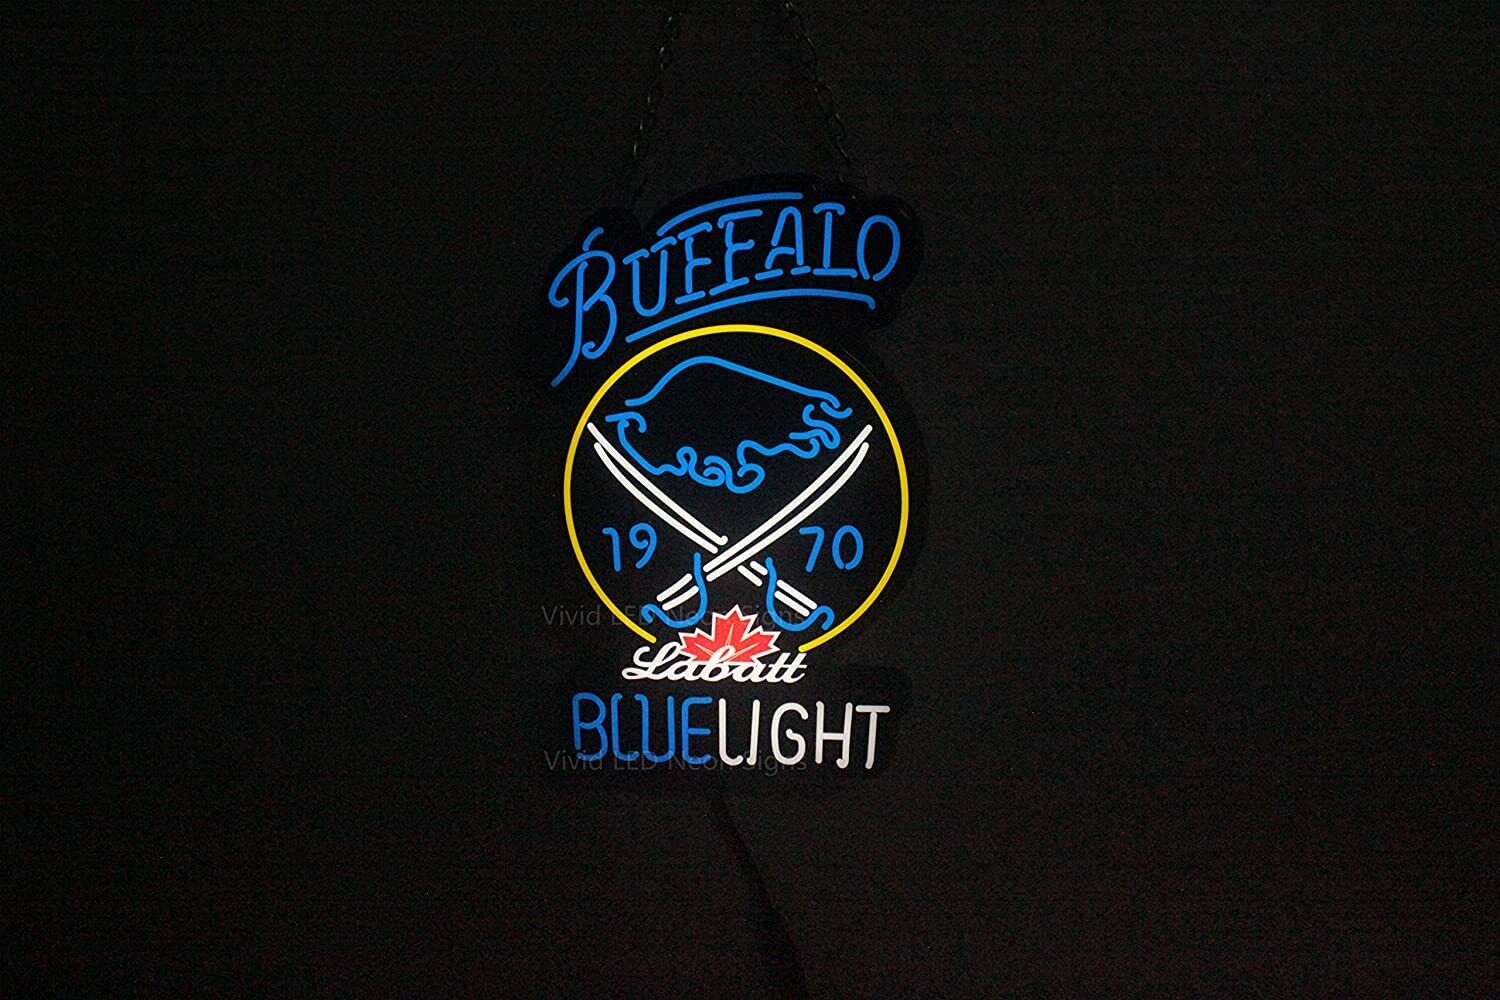 Labatt Blue Light Sabres Vivid LED Neon Sign Light Lamp Cute Super Bright 10